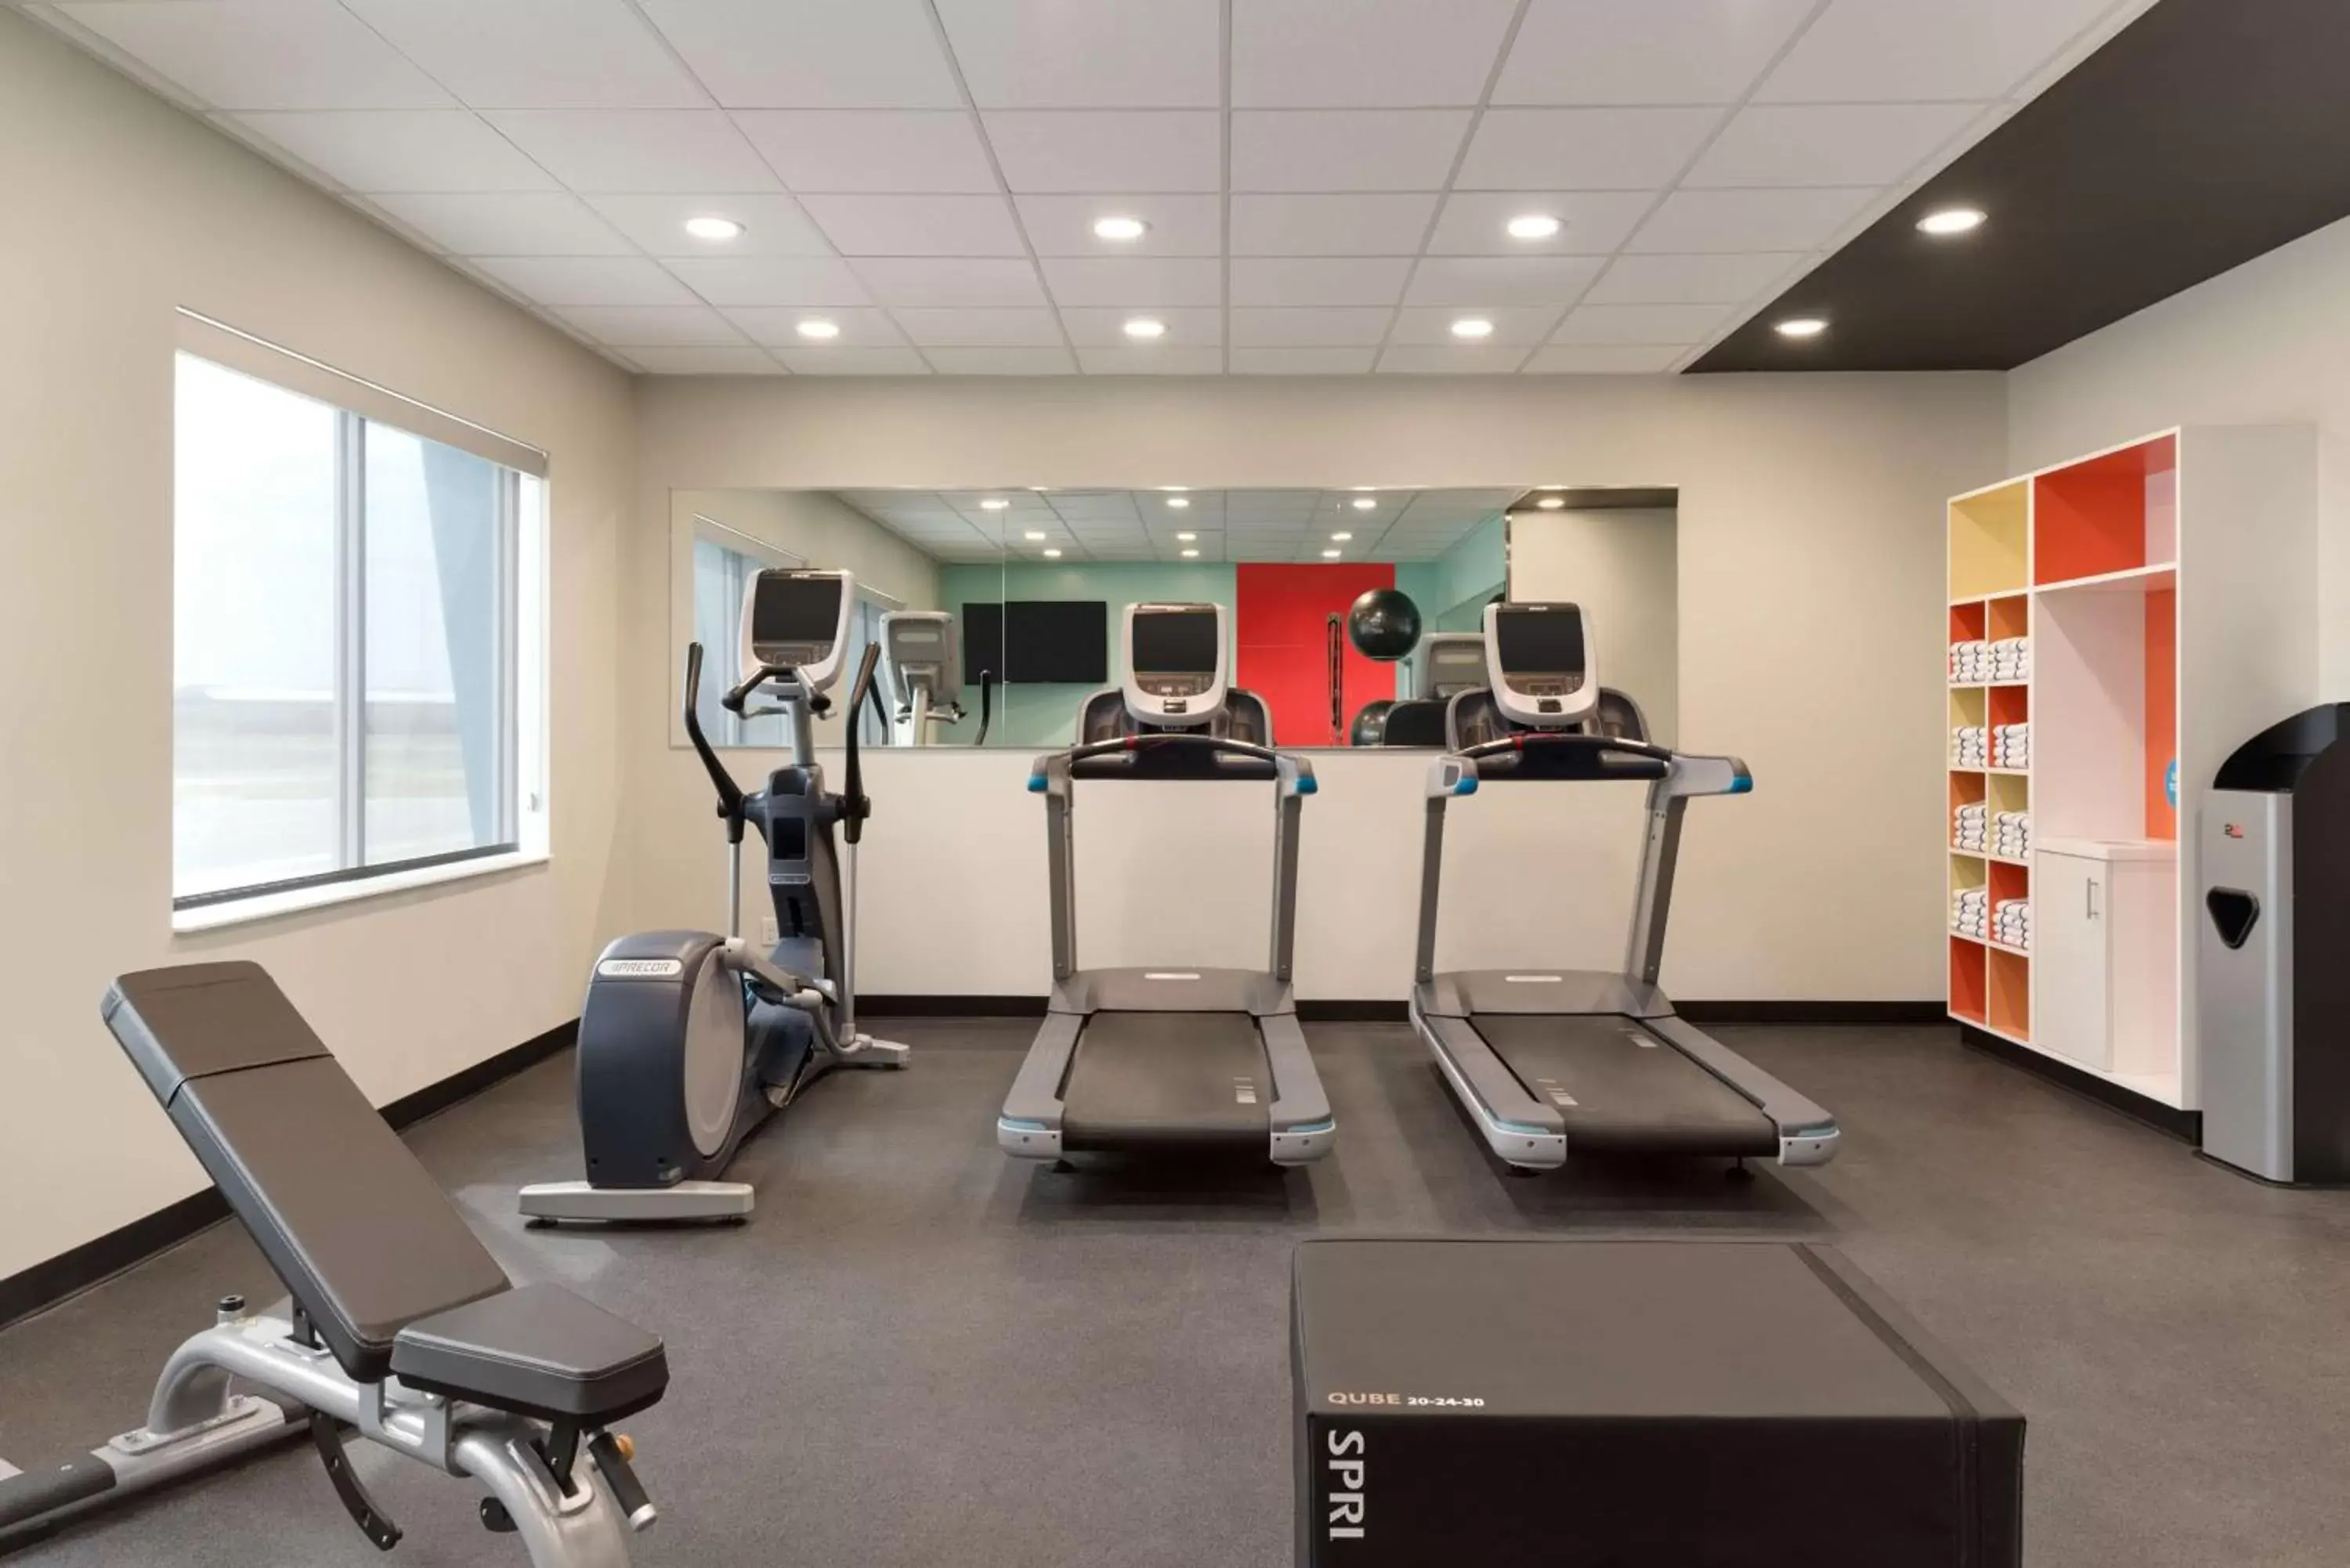 Fitness centre/facilities, Fitness Center/Facilities in Tru By Hilton Cedar Rapids Westdale